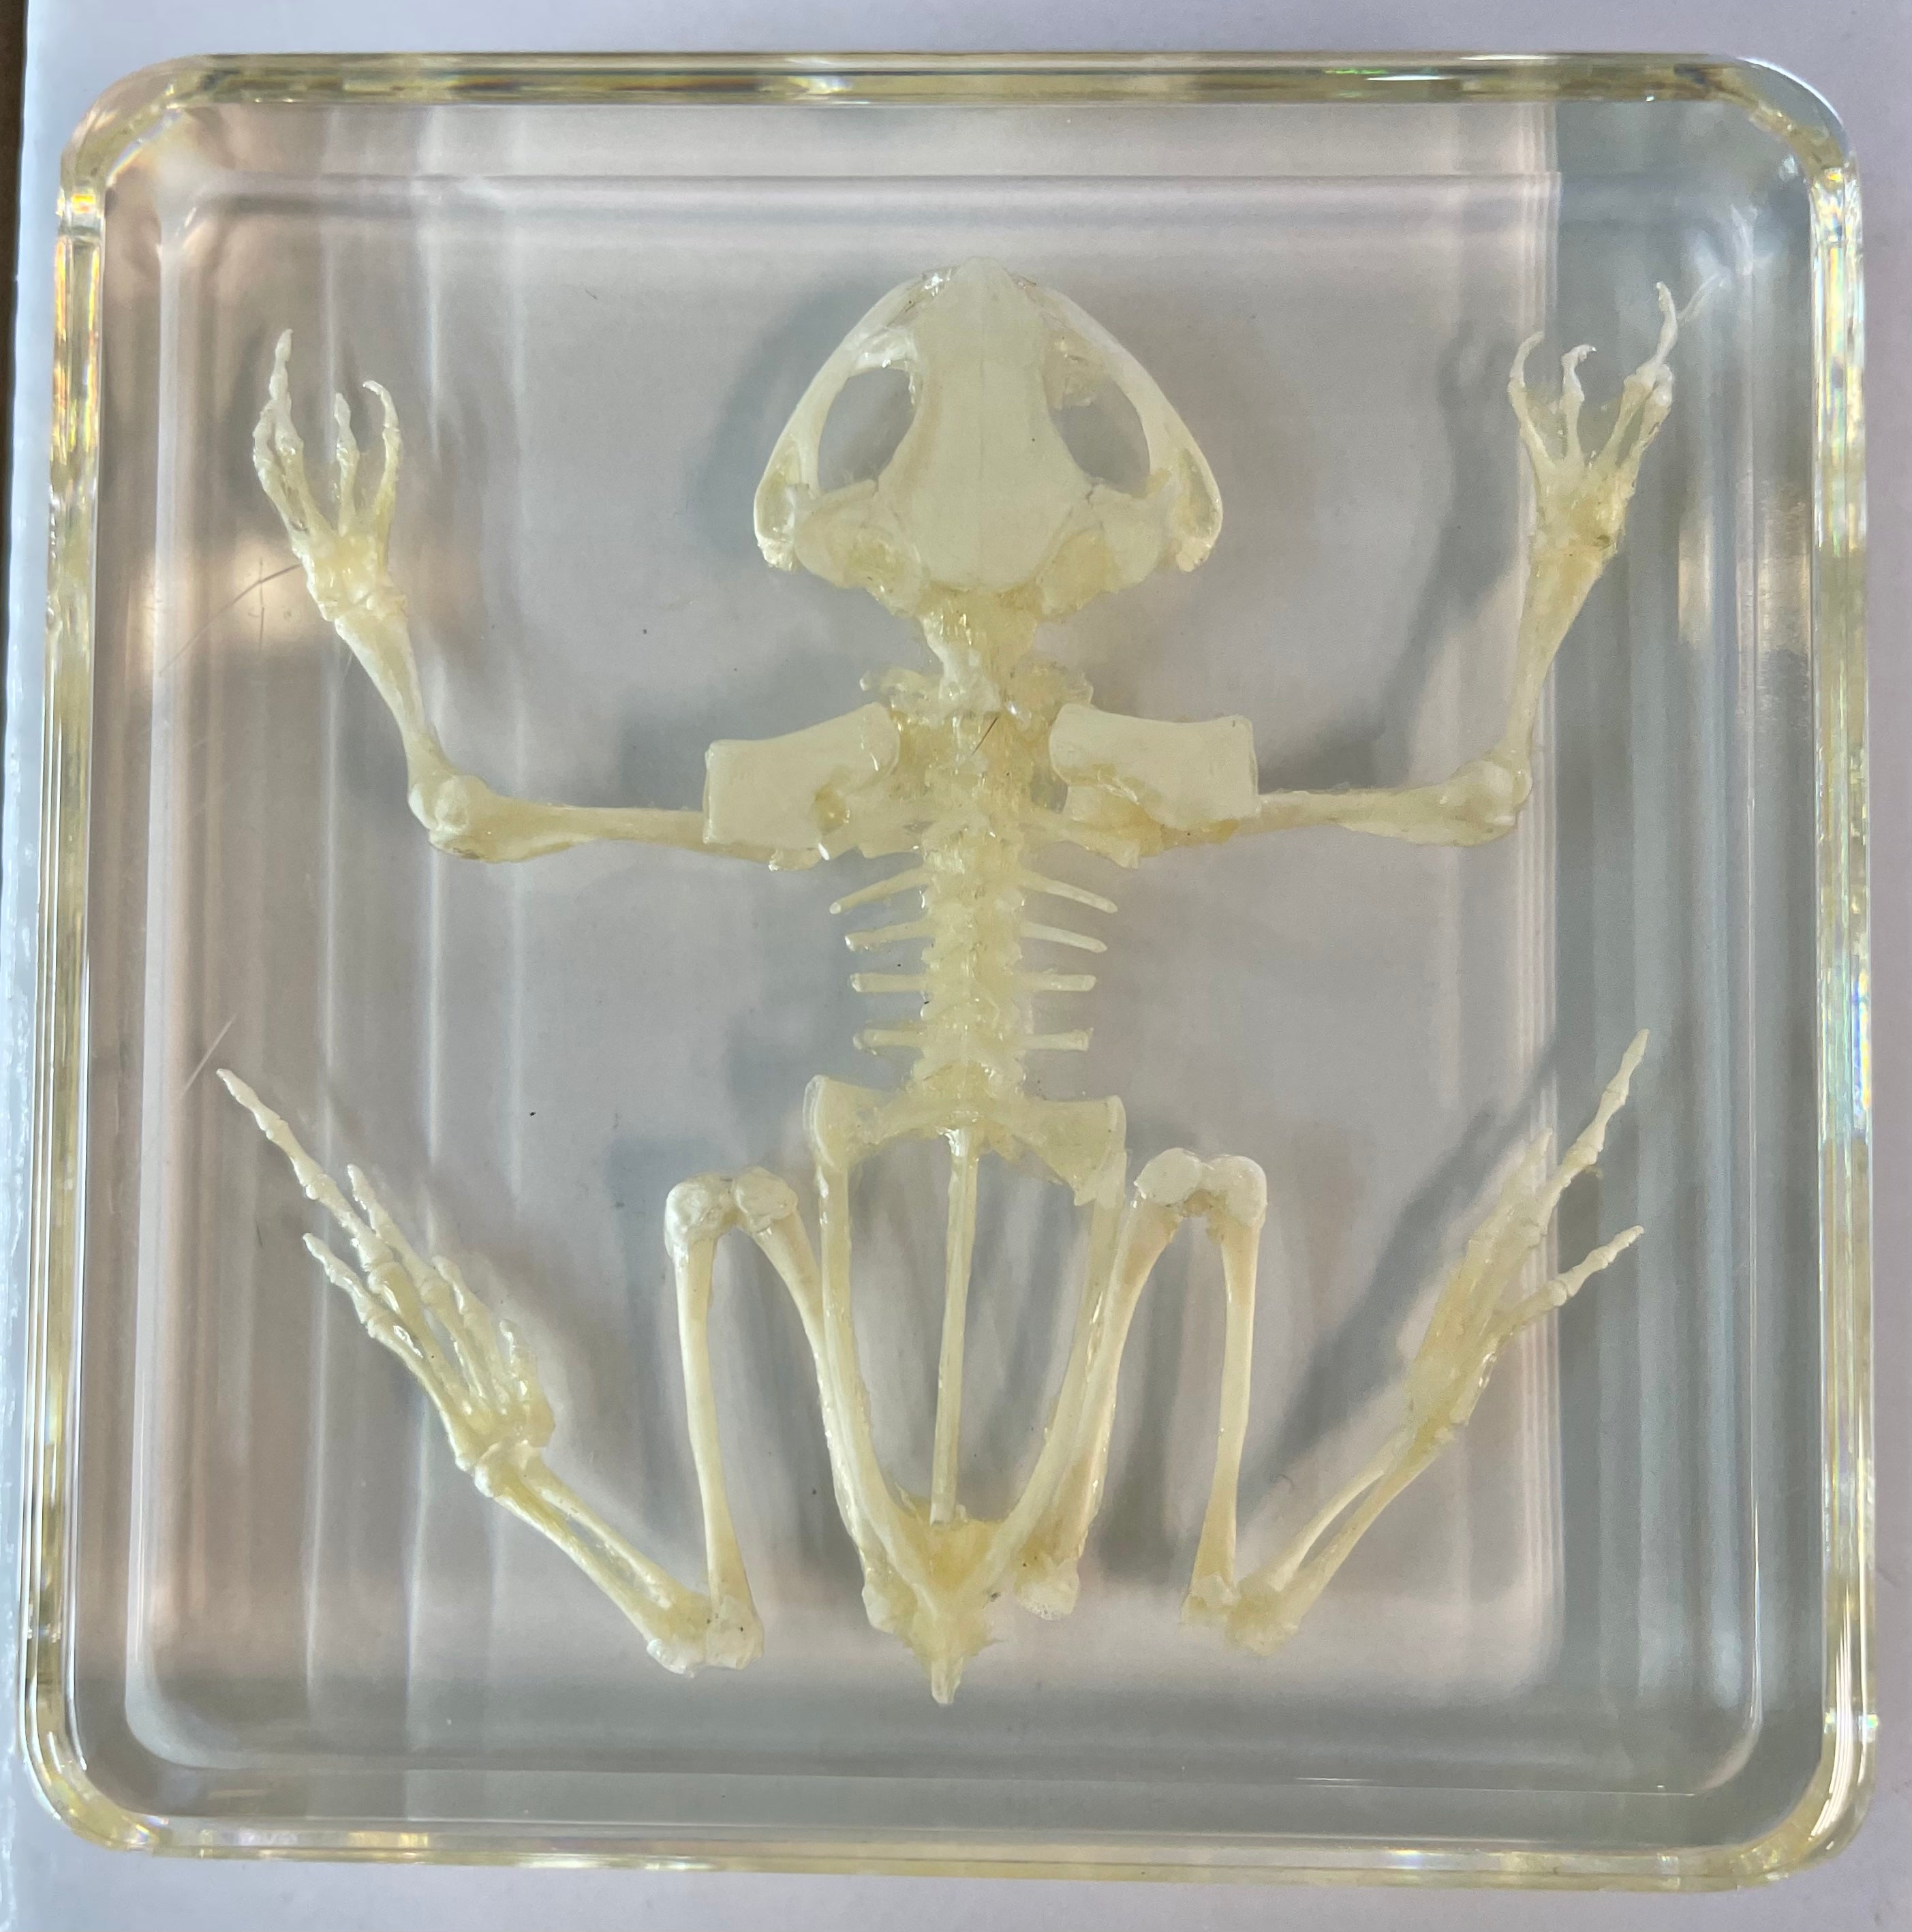 Frog Skeleton - Specimen In Resin